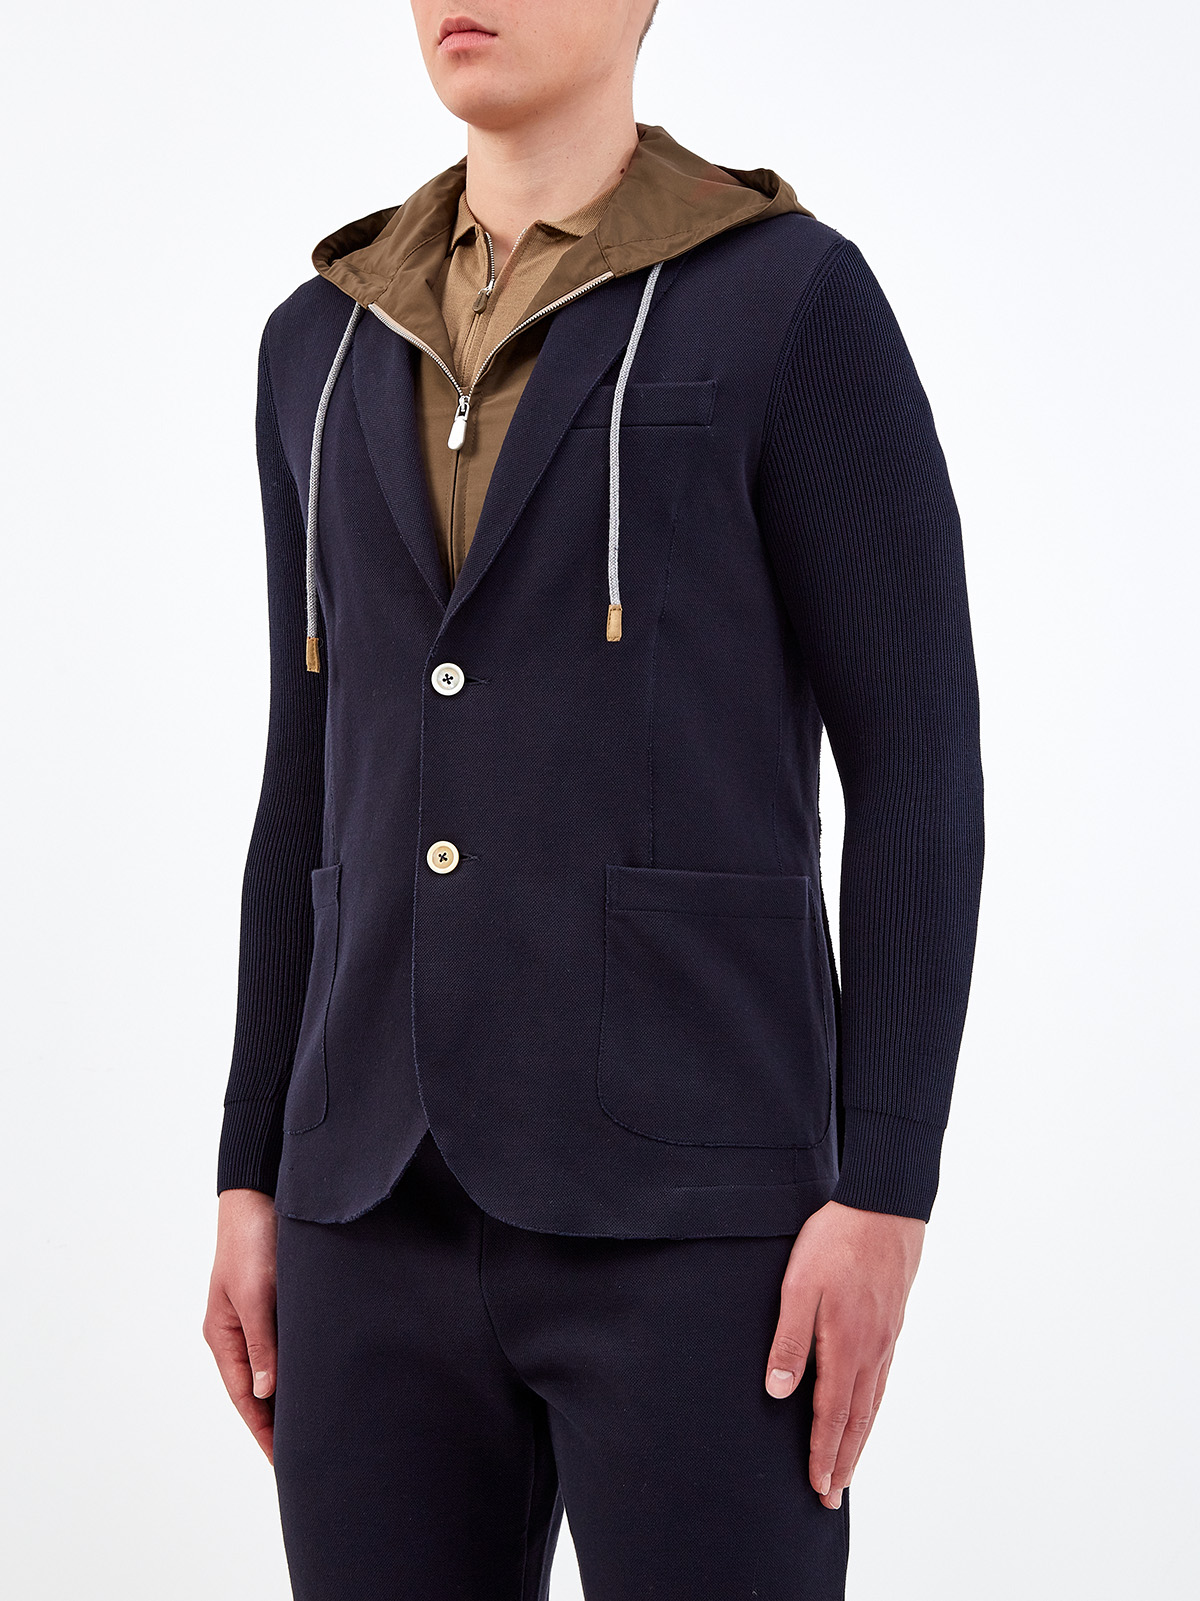 Комбинированный пиджак из хлопка и матового нейлона ELEVENTY, цвет мульти, размер 52;48 - фото 3